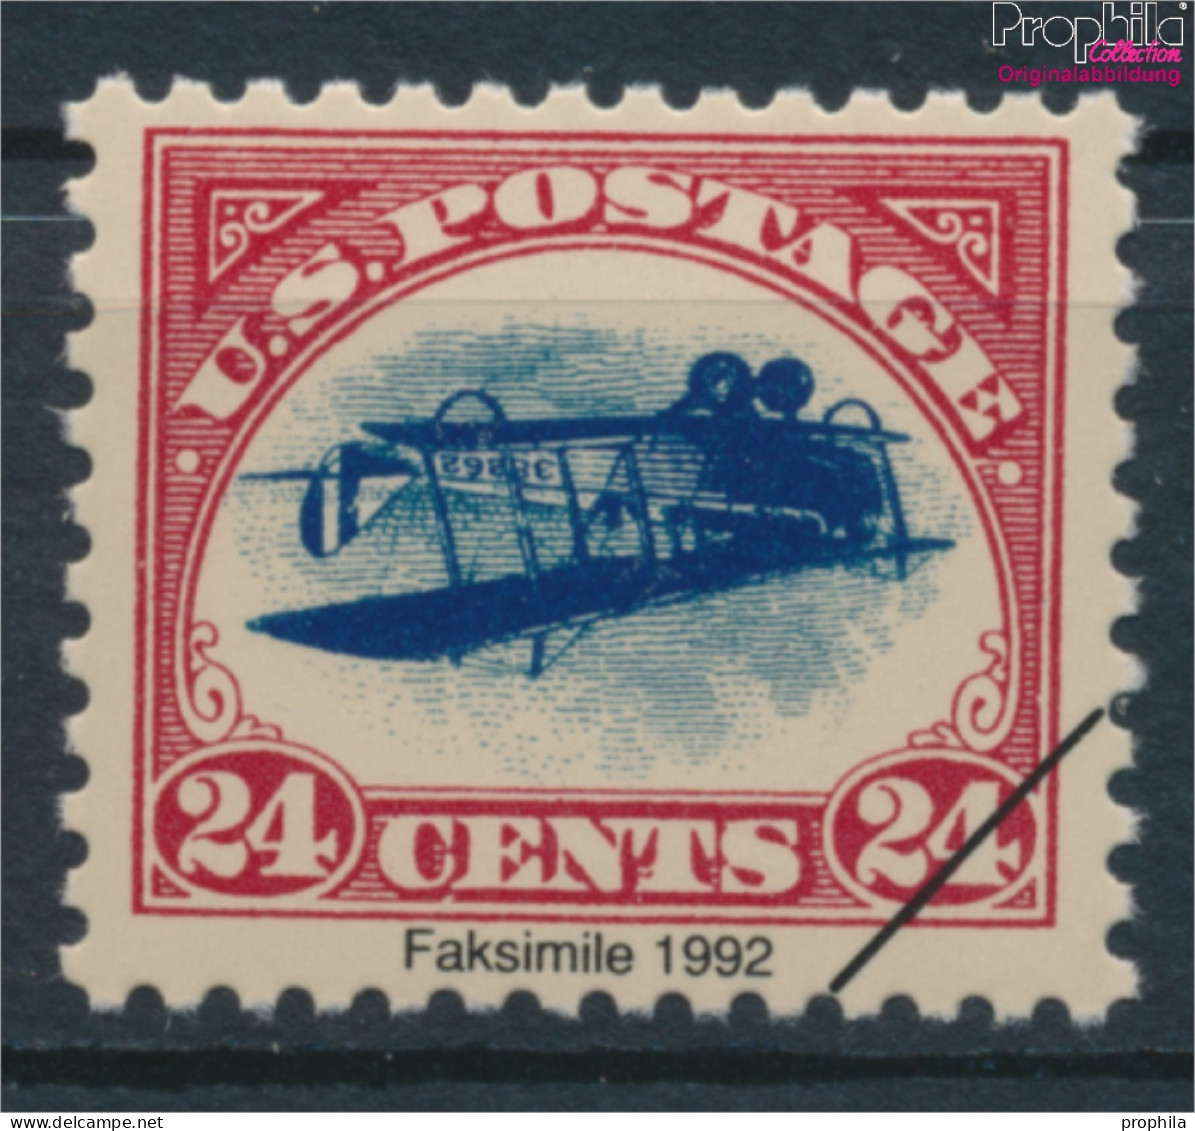 USA 250I ND, Privater Nachdruck Inverted Jenny Postfrisch 1918 Postfluglinie-NewYork-Philadelphia- (10160954 - Nuevos